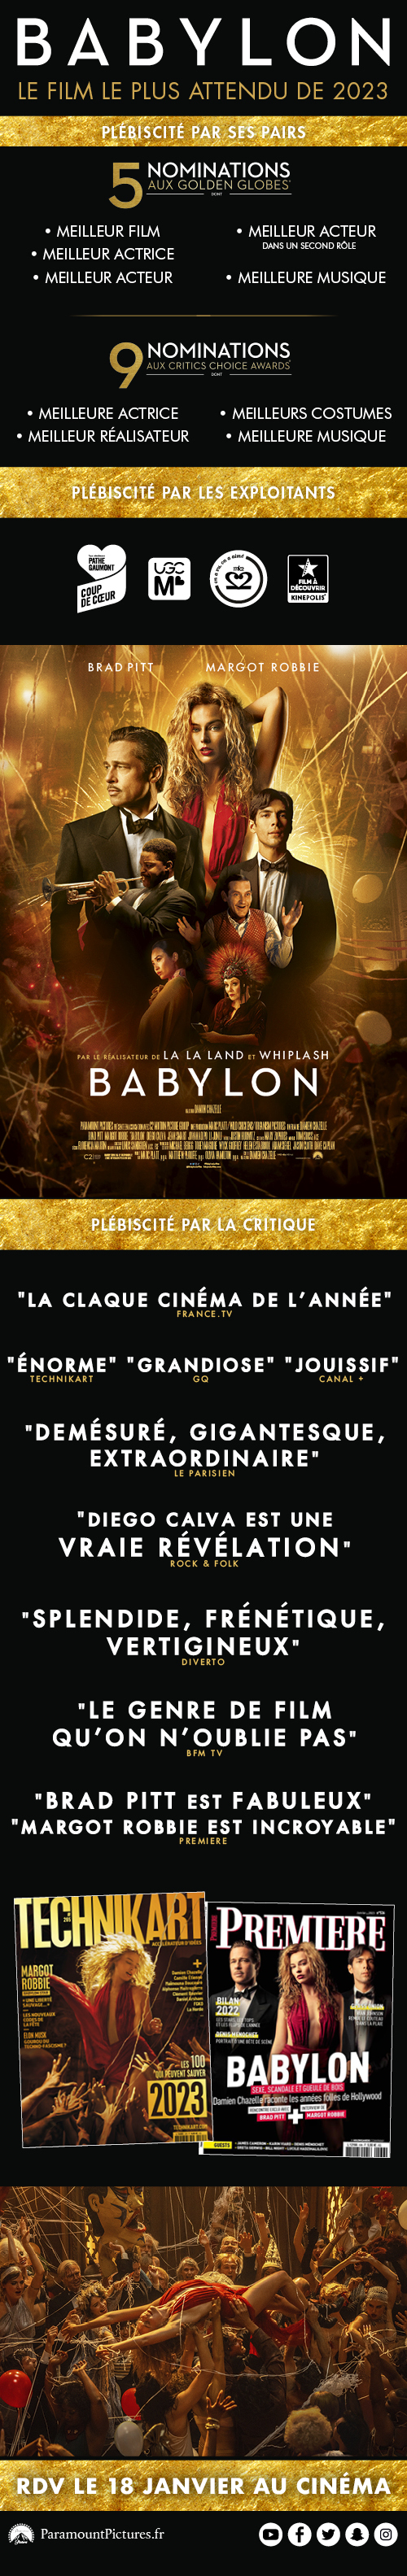 BABYLON acclamé ! avec Brad Pitt, Margot Robbie, Olivia Wilde - Au cinéma le 18 janvier 2023